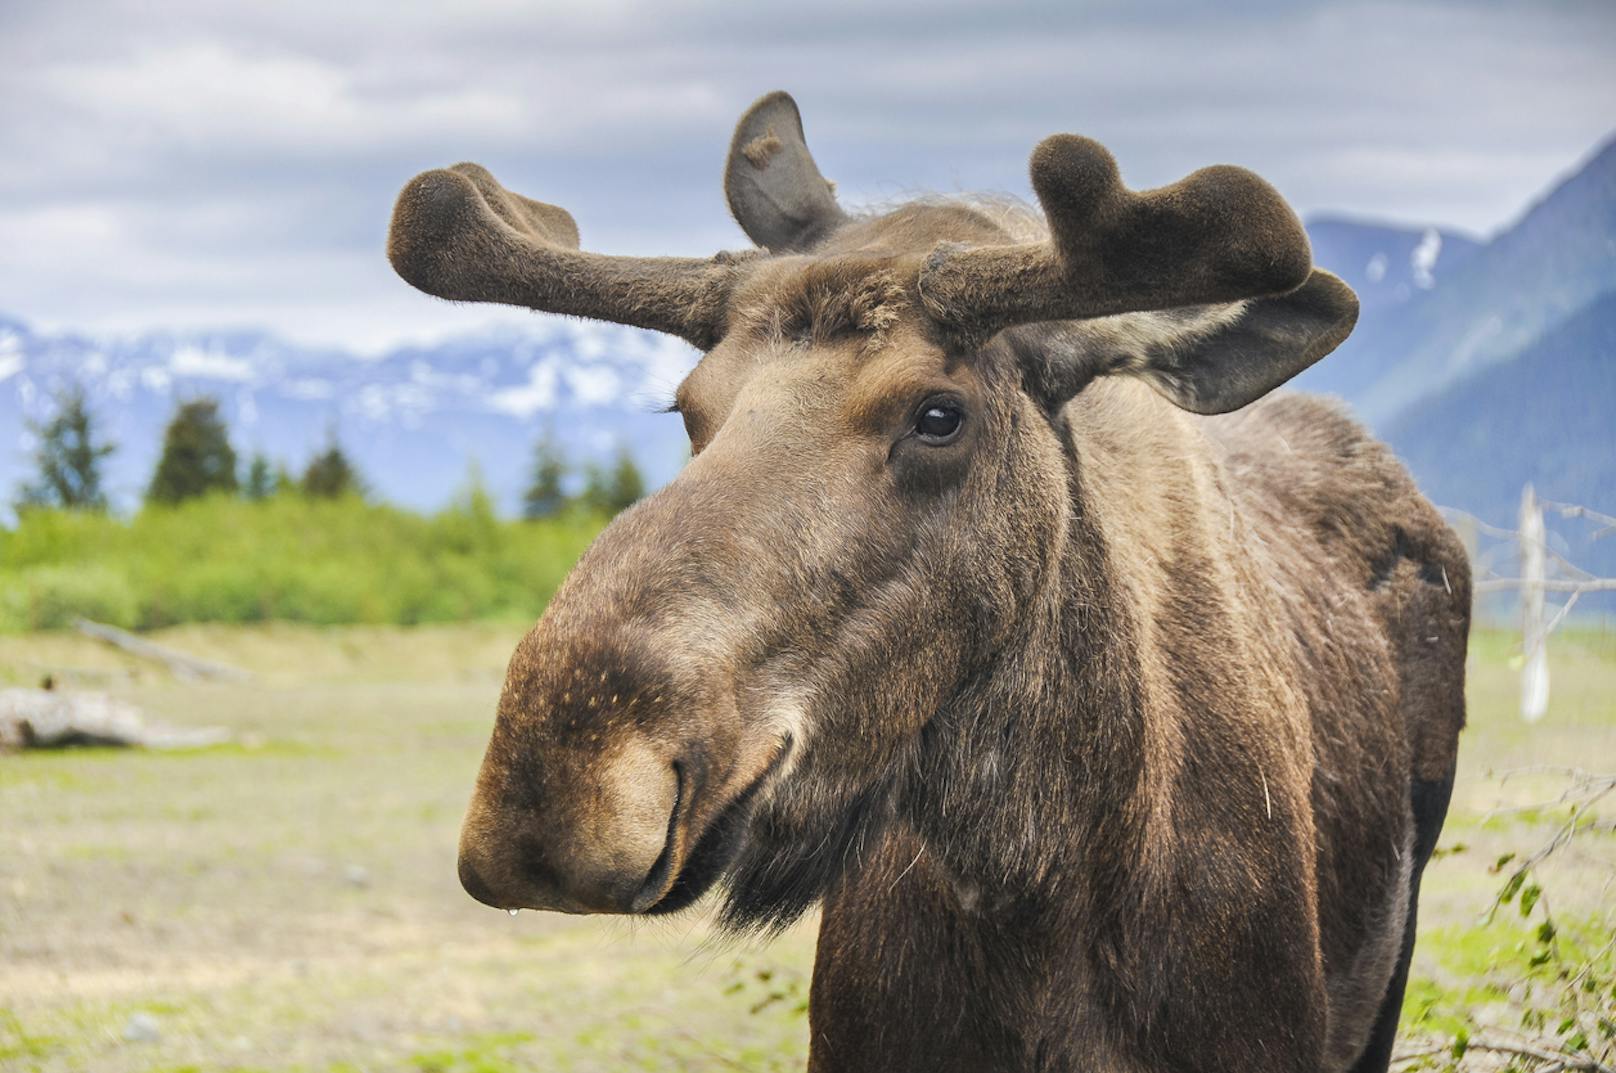 In <strong>Alaska</strong> ist es explizit verboten, einen Elch betrunken zu machen oder einen lebenden Elch aus dem Flugzeug zu werfen.&nbsp;